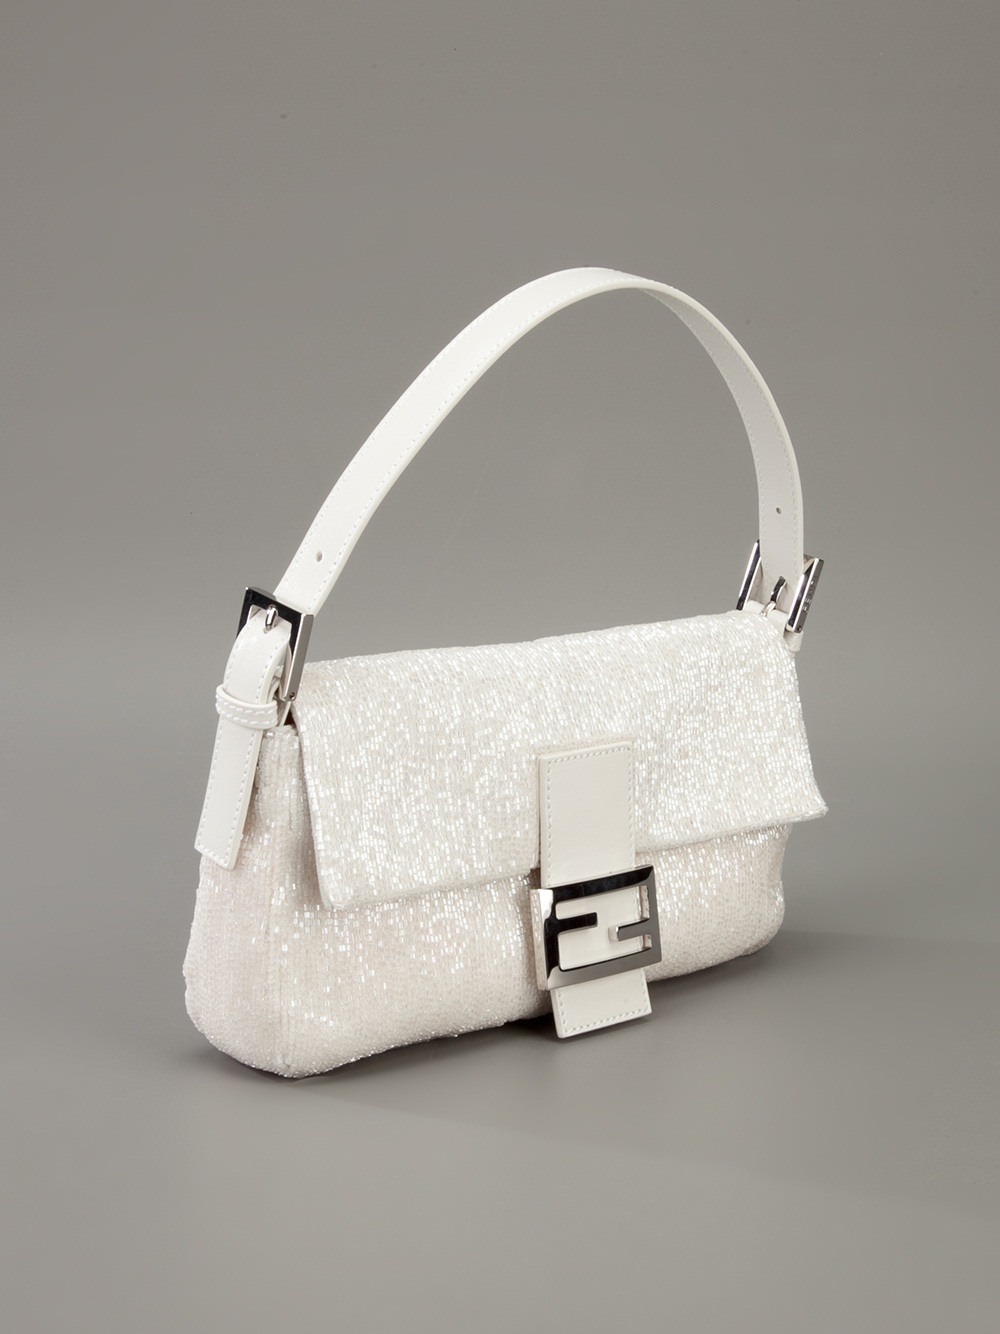 Fendi Baguette Bag in White - Lyst